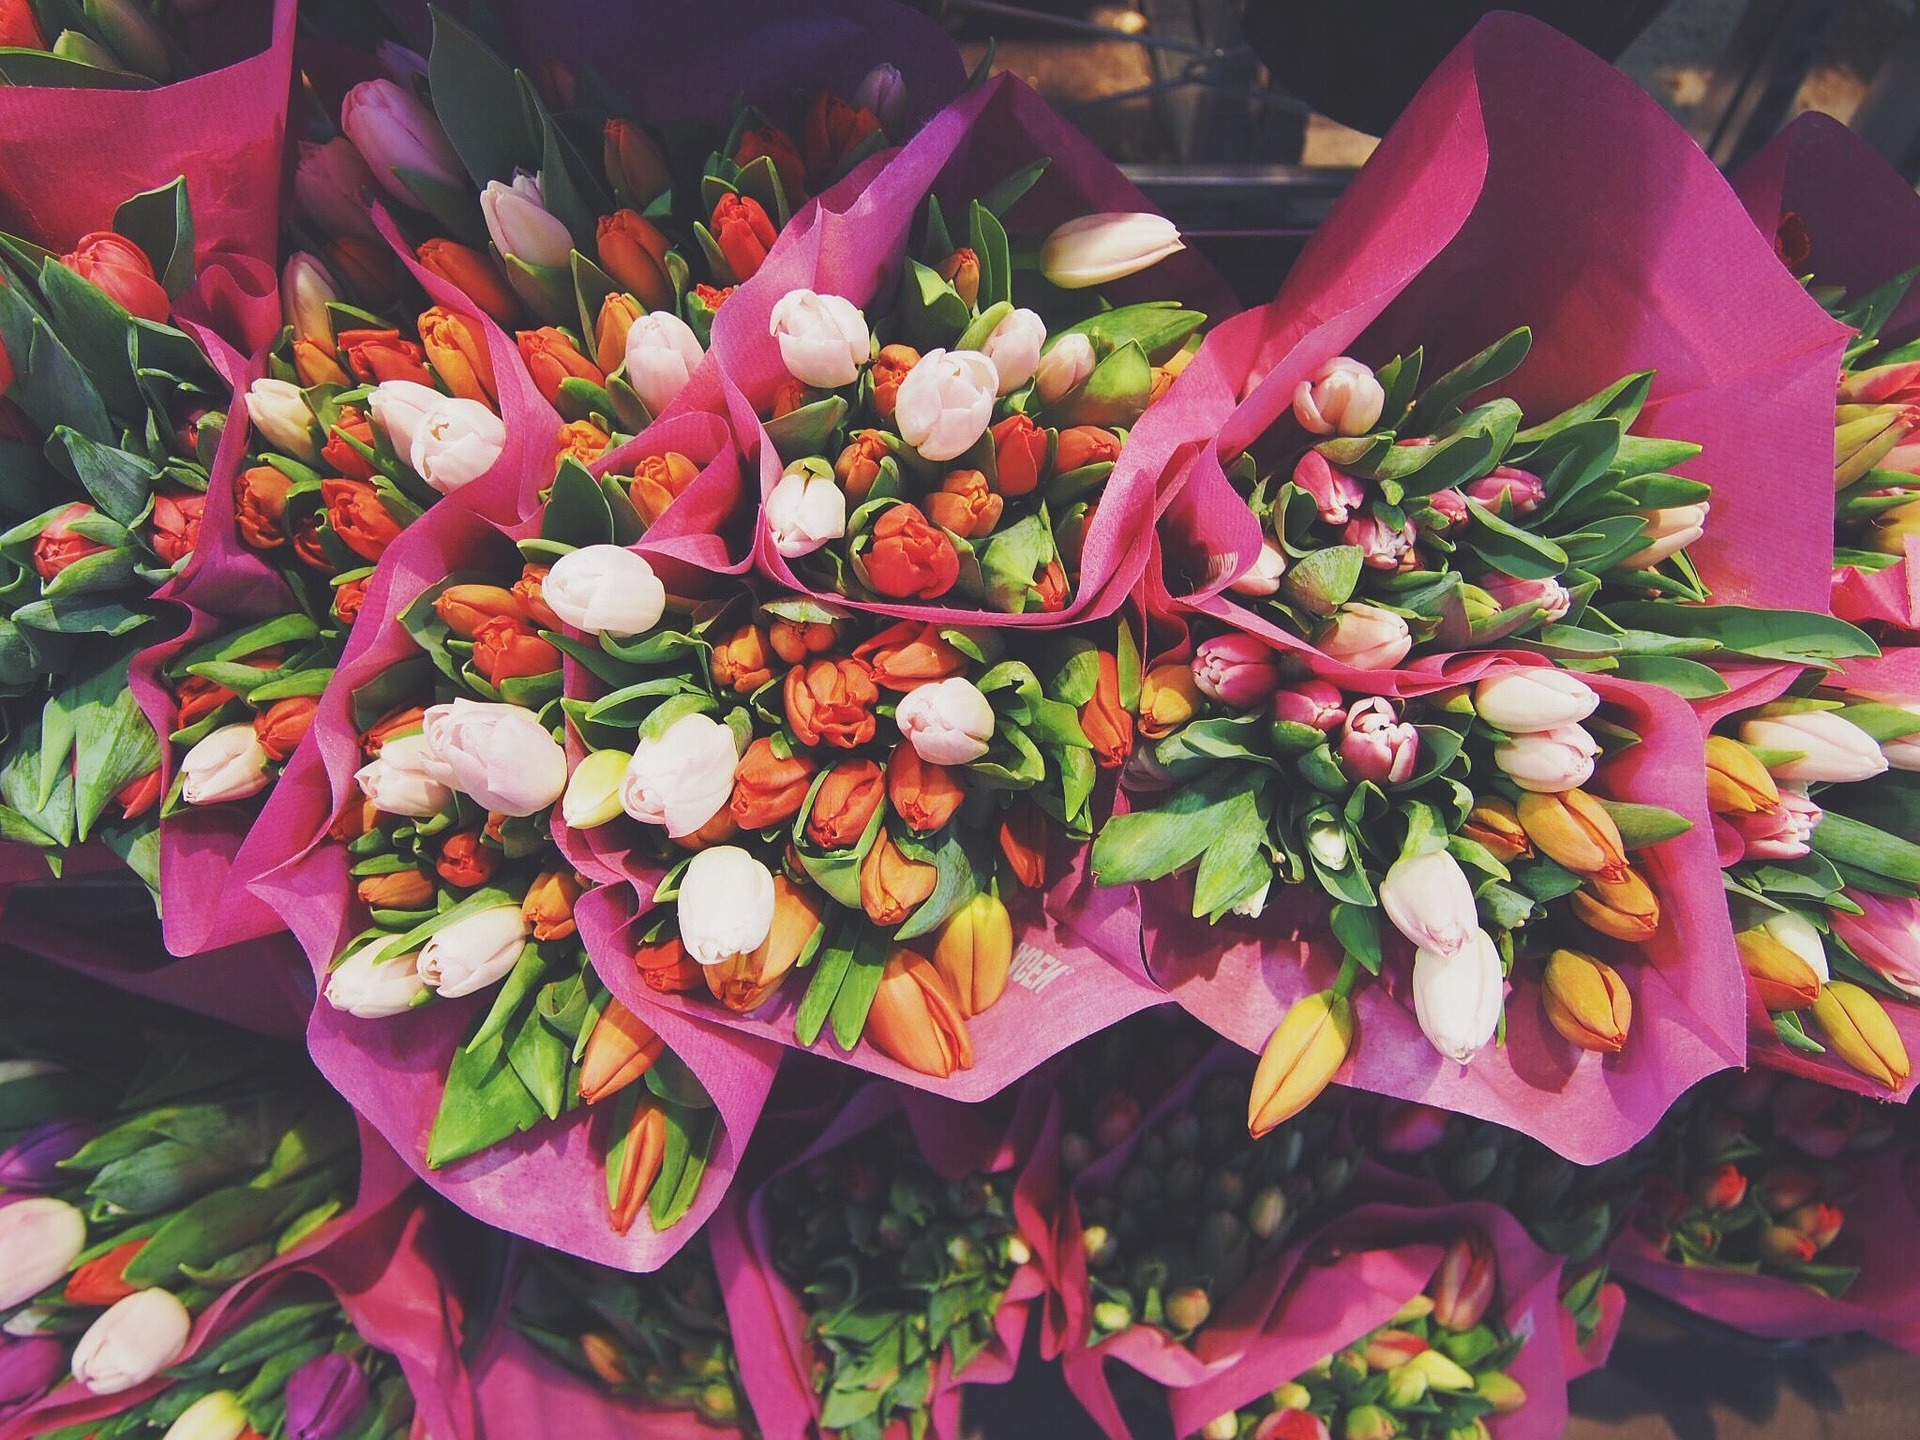 živé farebné tulipány v ružovom baliacom papieri